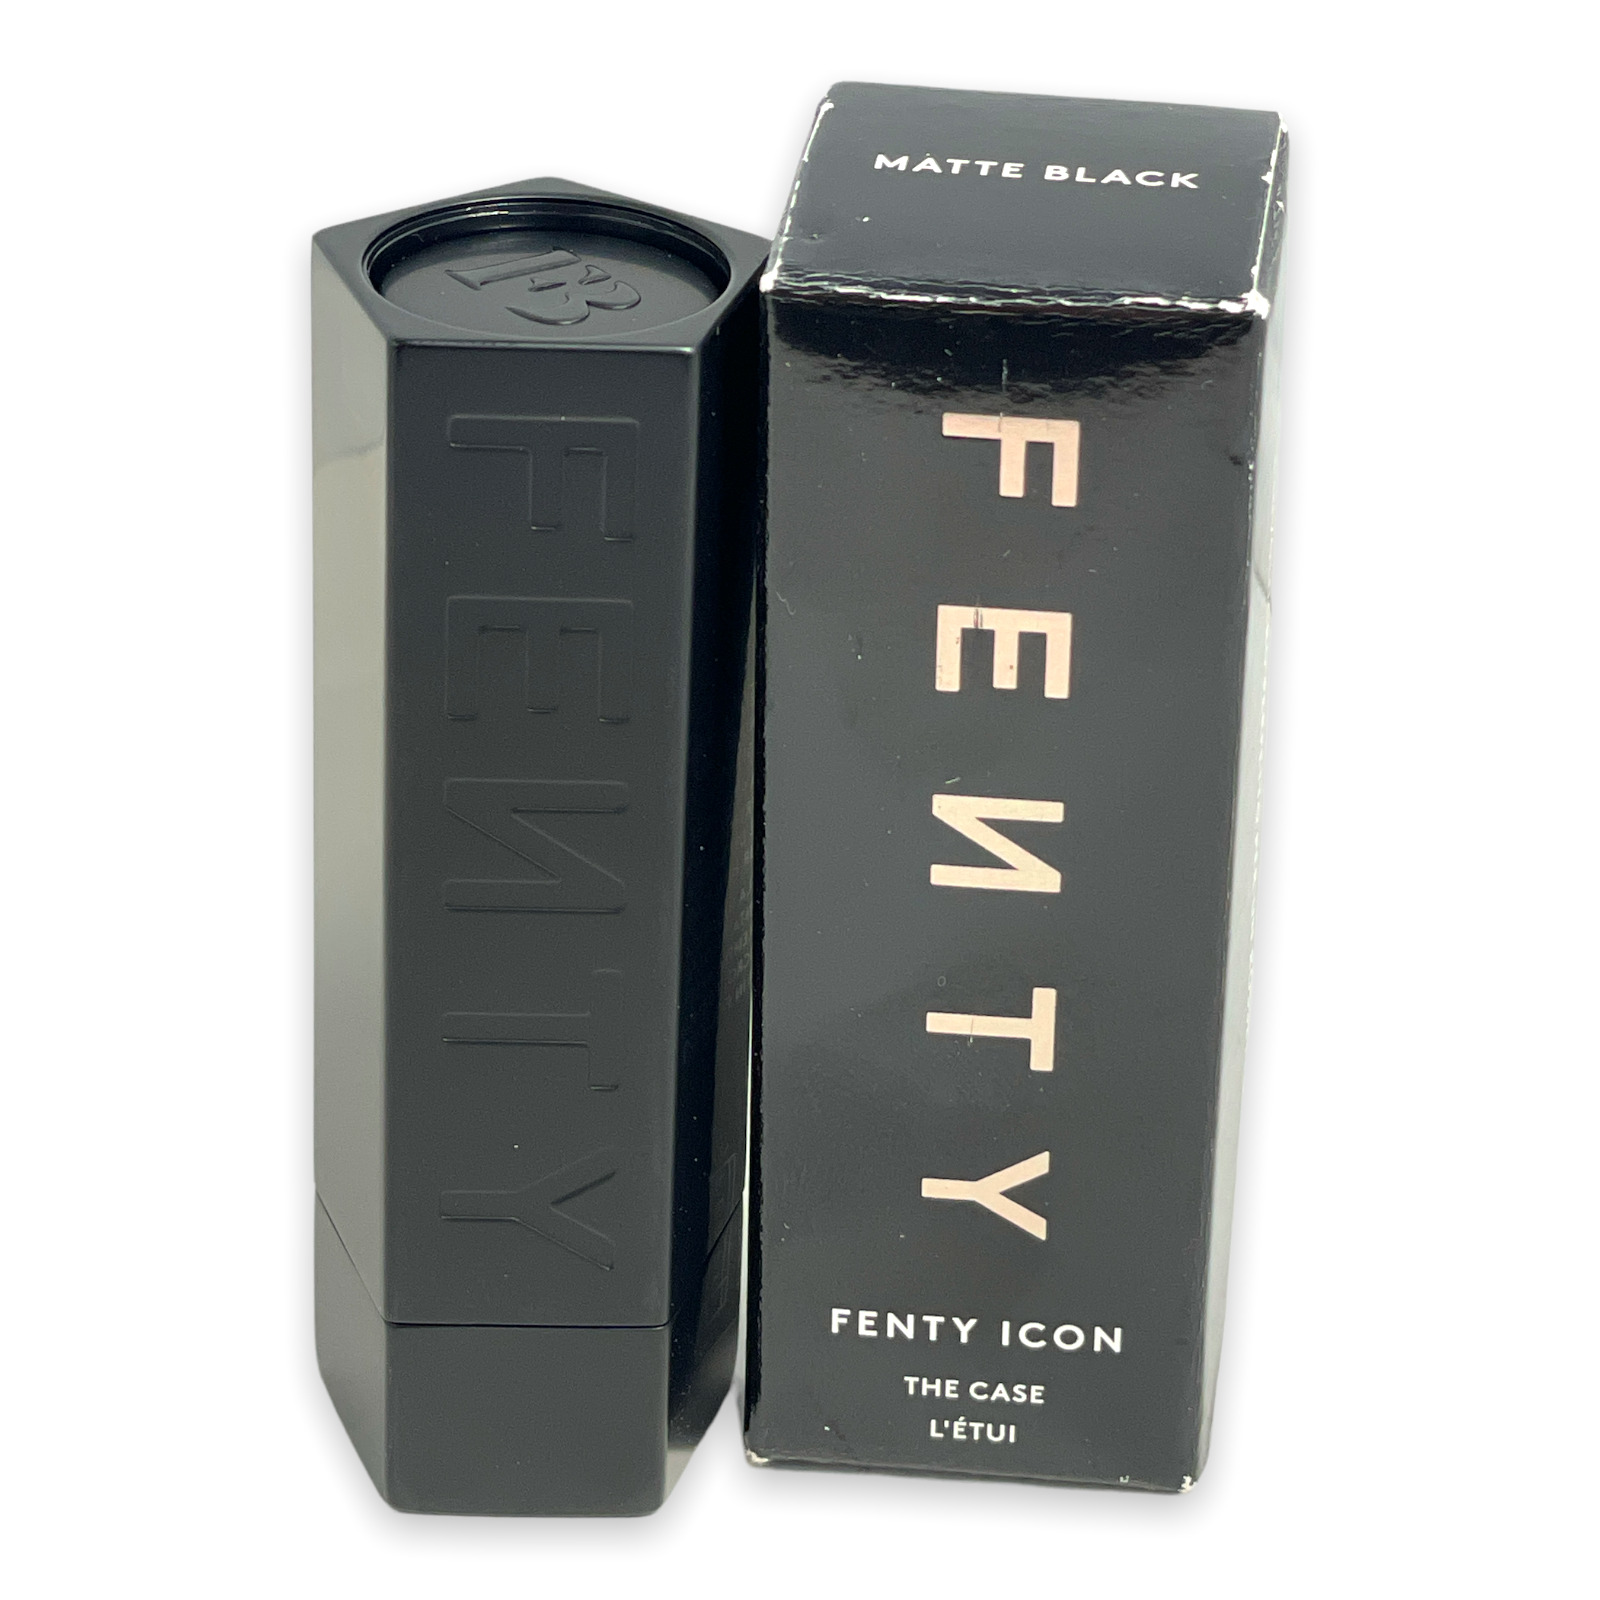 Fenty Icon The Case By Fenty Beauty *MATTE BLACK* NEW IN BOX